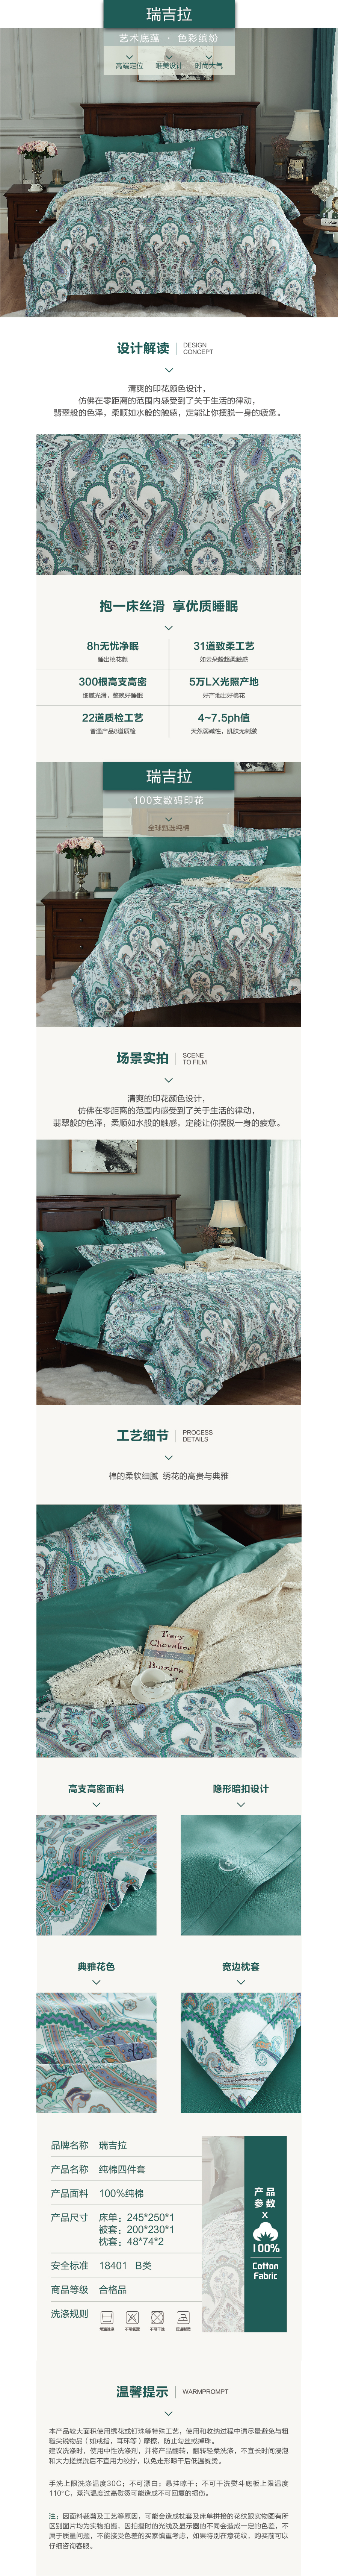 床上用品 纯棉四件套 蕾丝工艺 数码印花系列 瑞吉拉